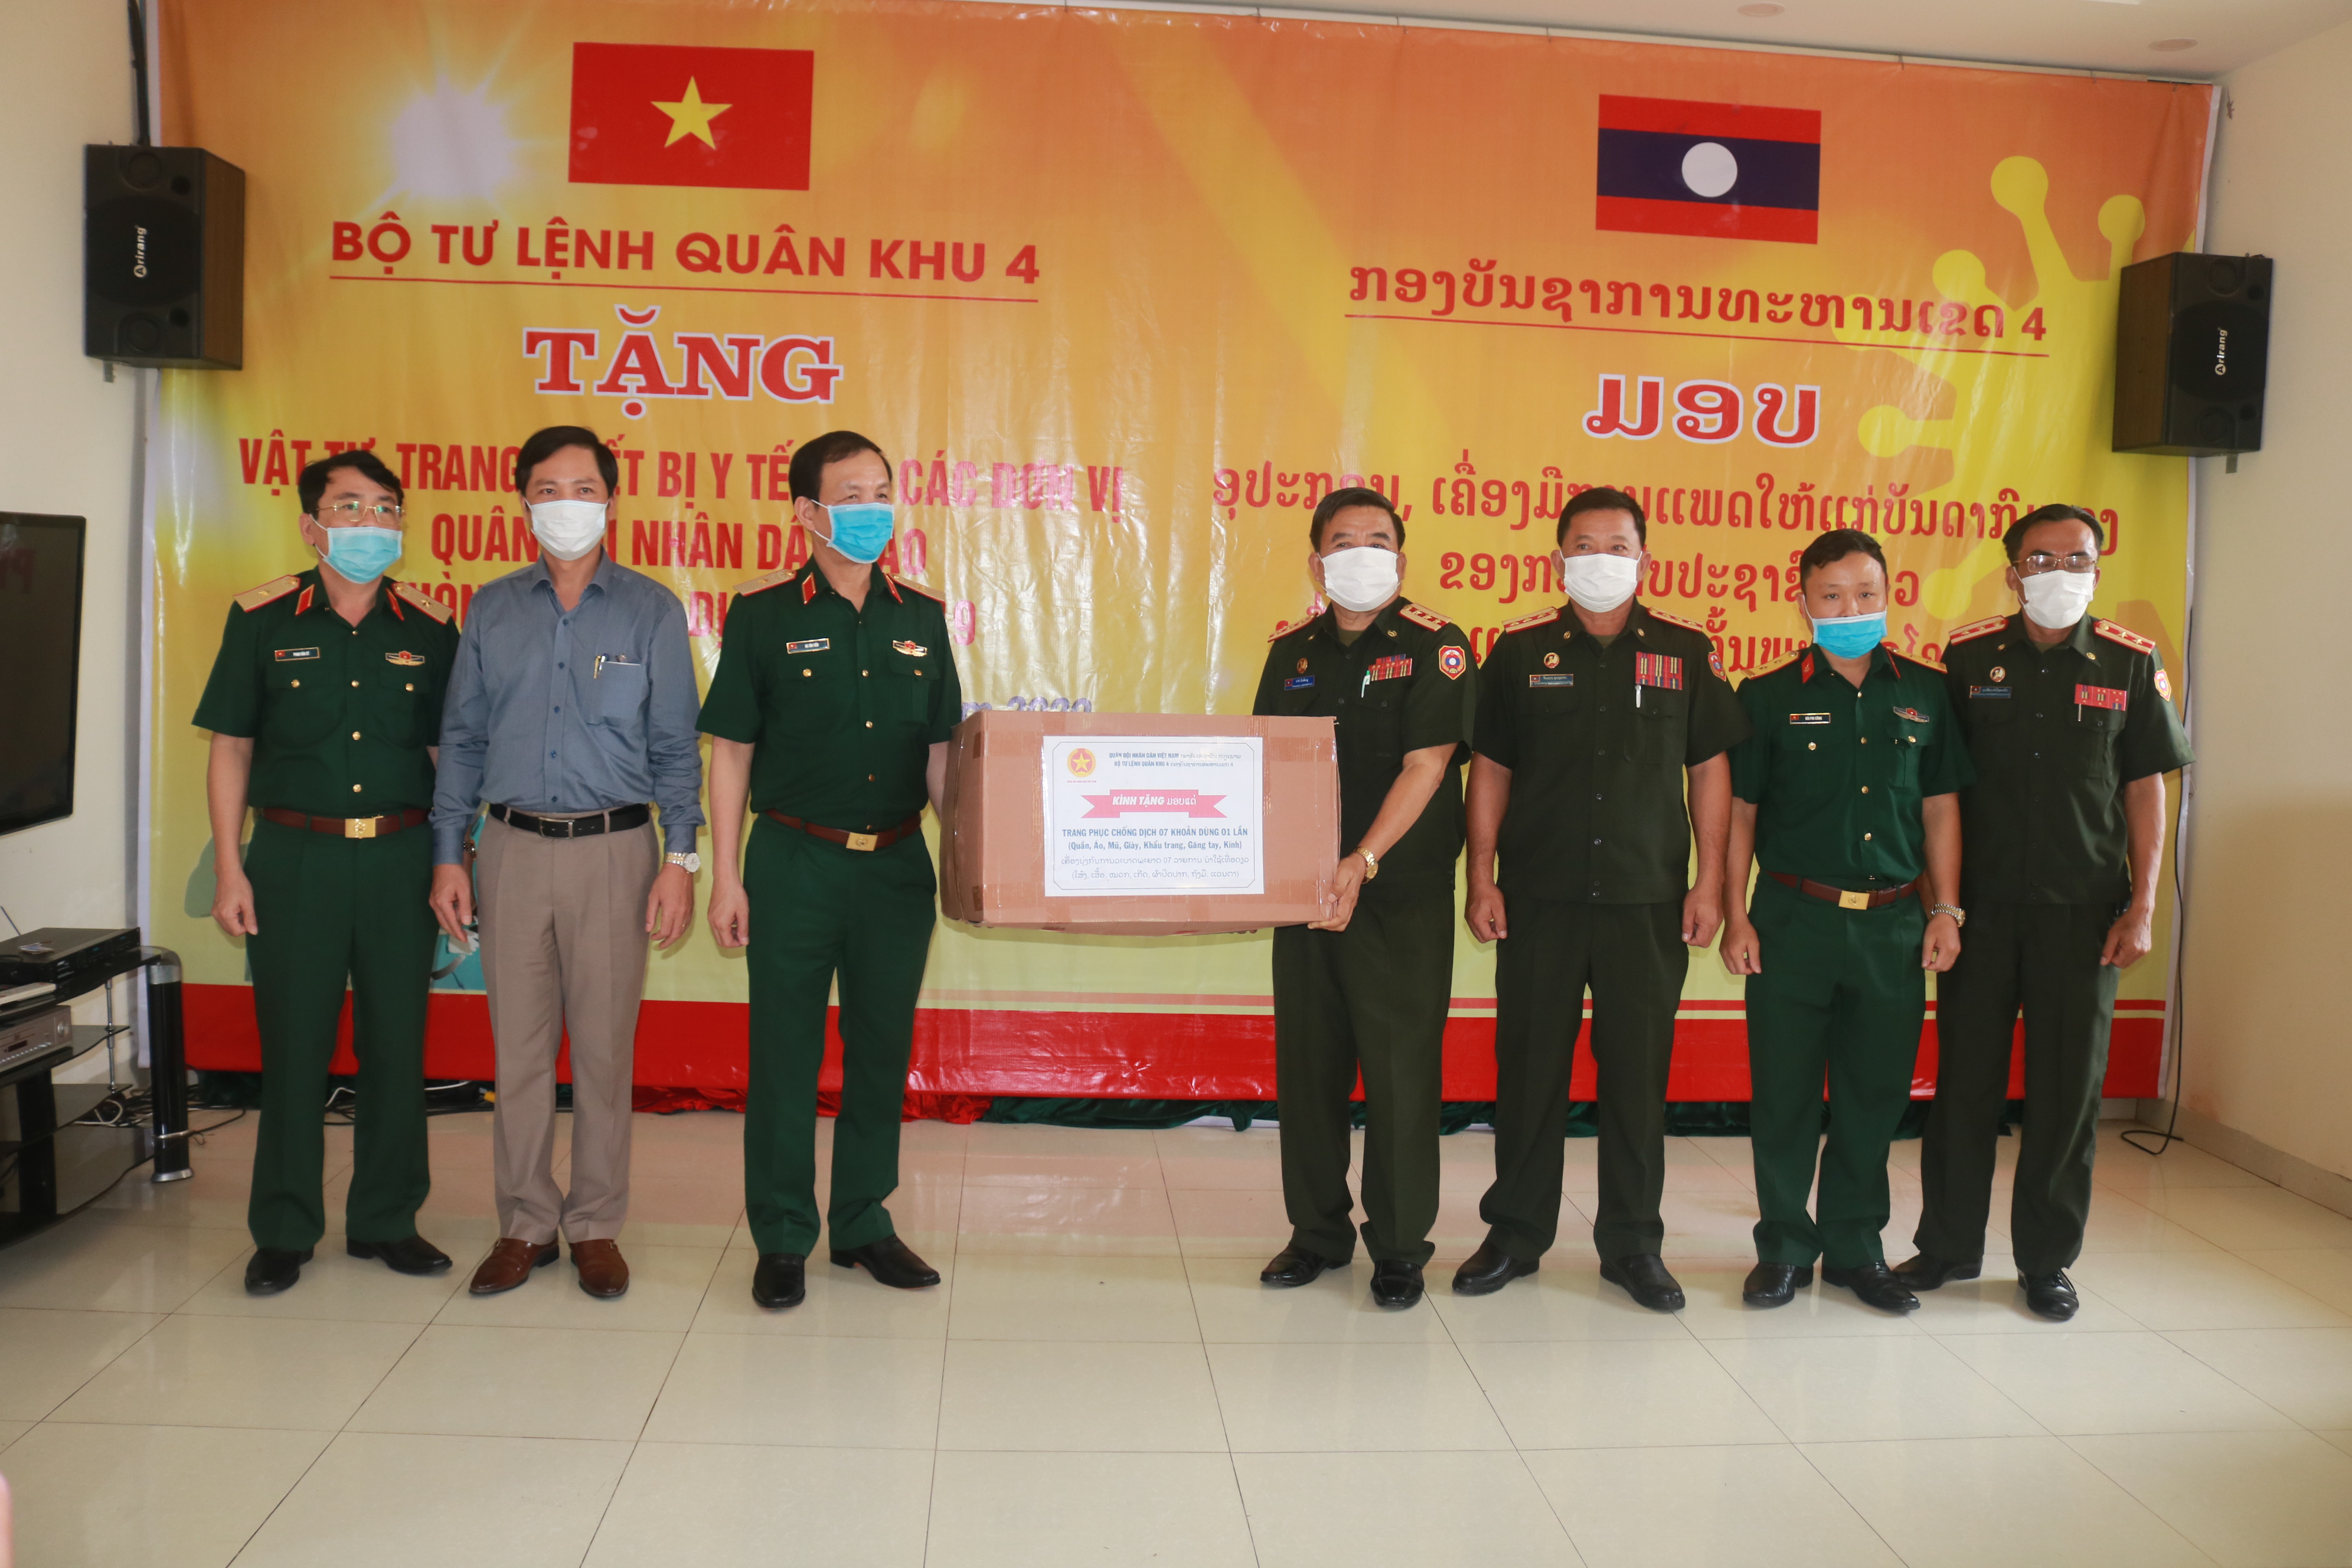 Thiếu tướng Hà Tân Tiến – Phó Tư lệnh Quân khu 4 và các cơ quan Quân khu trao quà Bộ Tư lệnh Quân khu 4 cho quân đội Lào